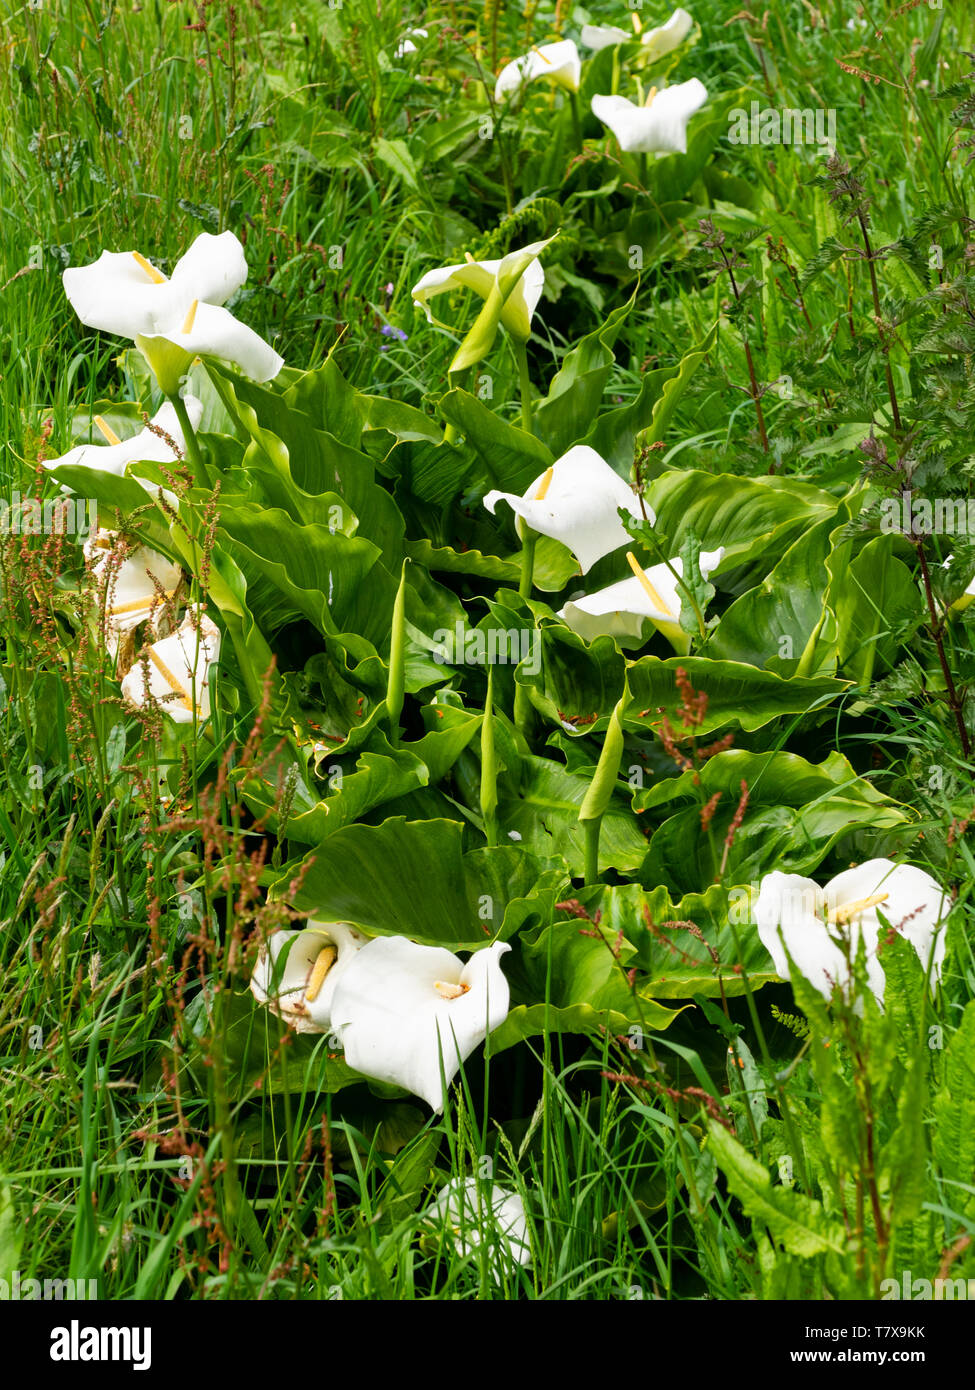 Spathes blanches et jaunes de l'Afrique du Sud spadices calla lily, Zantedeschia aethiopica, naturalisé dans un fossé au Royaume-Uni Banque D'Images